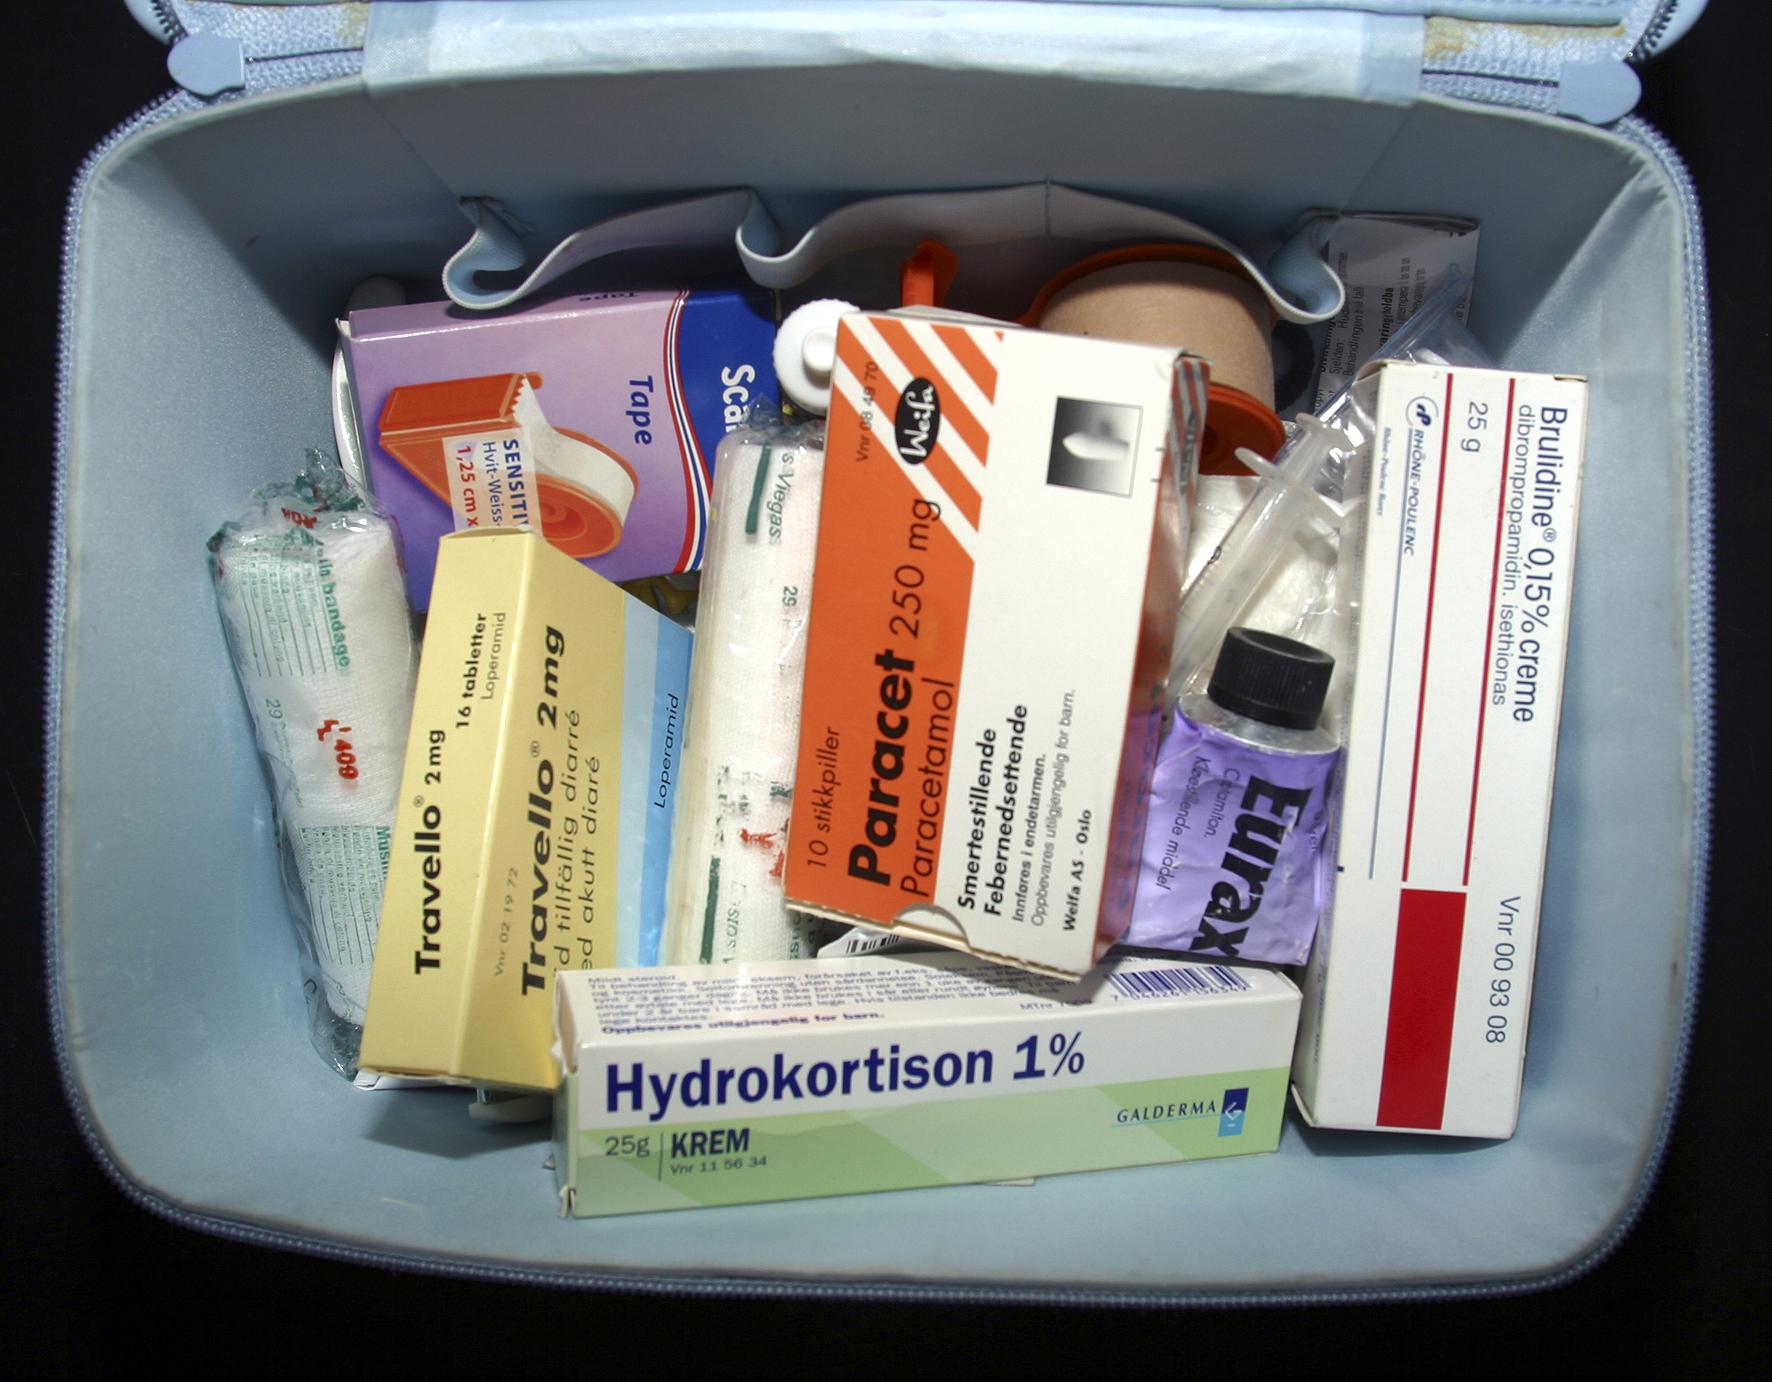 Hydrokortison brukes både som krem og tabletter til ulike sykdommer. Som behandling til covid-19 gis hydrokortison systemisk, altså for eksempel gjennom munnen og gjennom injeksjoner, ikke som krem. 